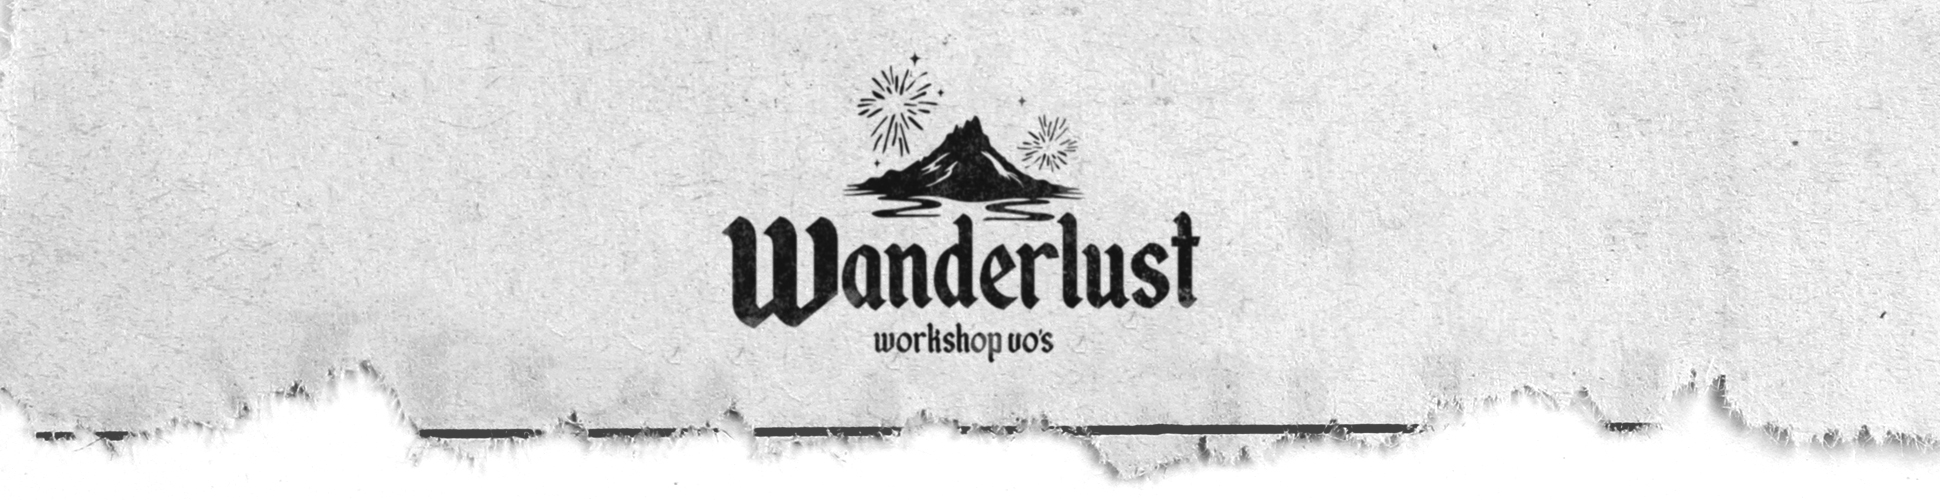 wanderlsut-top-banner